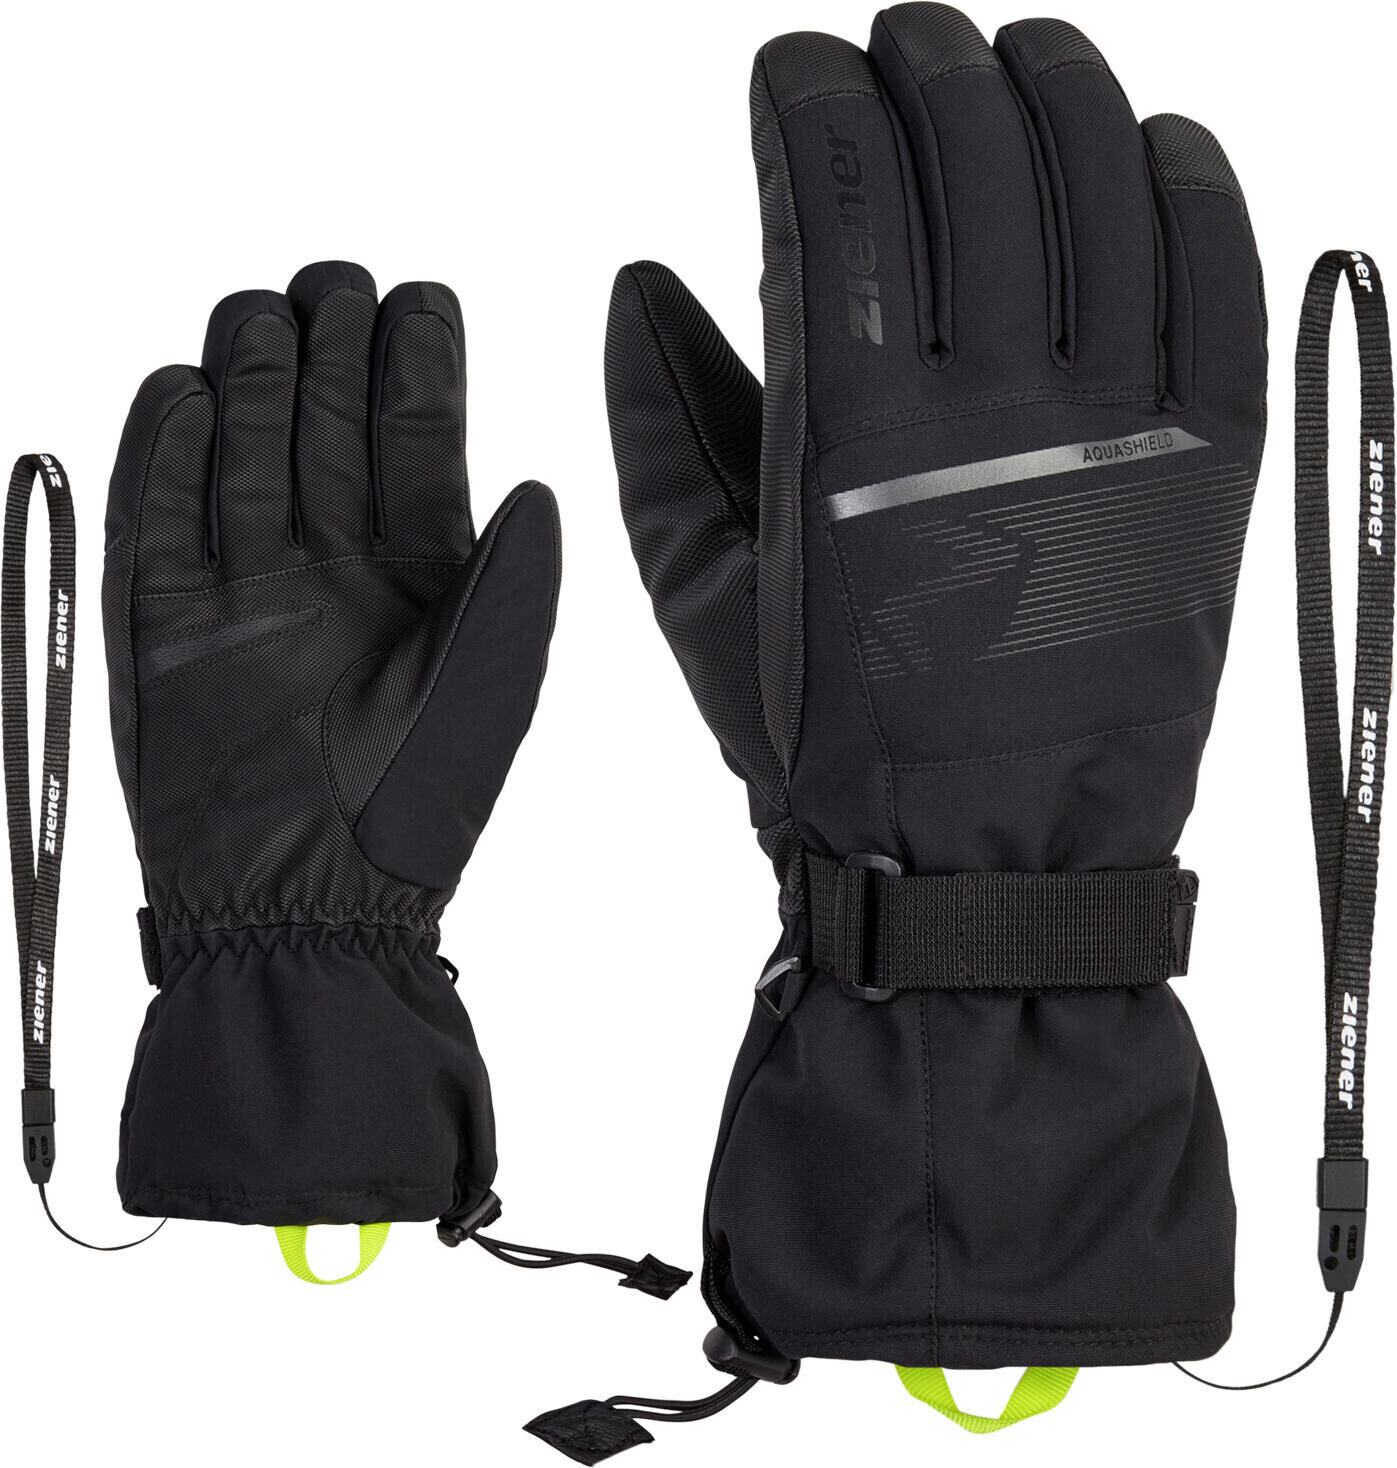 Ziener Gentian ASR Glove Ski Alpine black ab 42,48 € | Preisvergleich bei